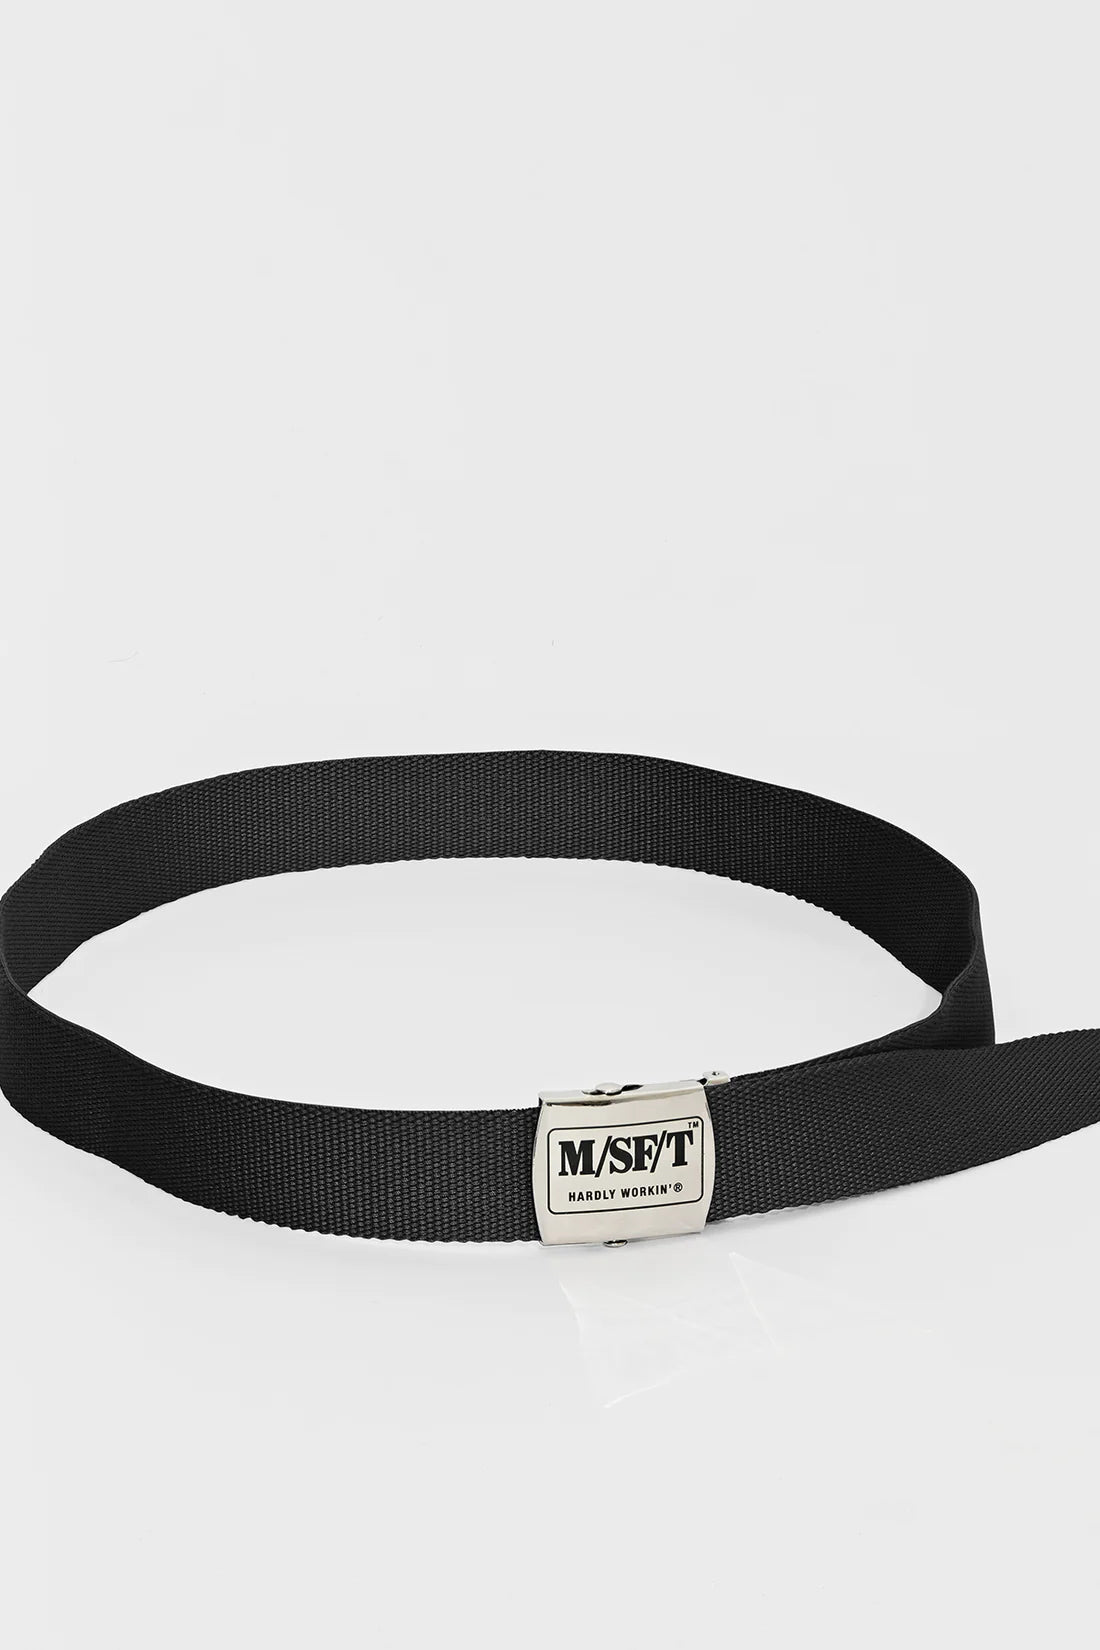 MISFIT // Lavigne Belt VINTAGE BLACK